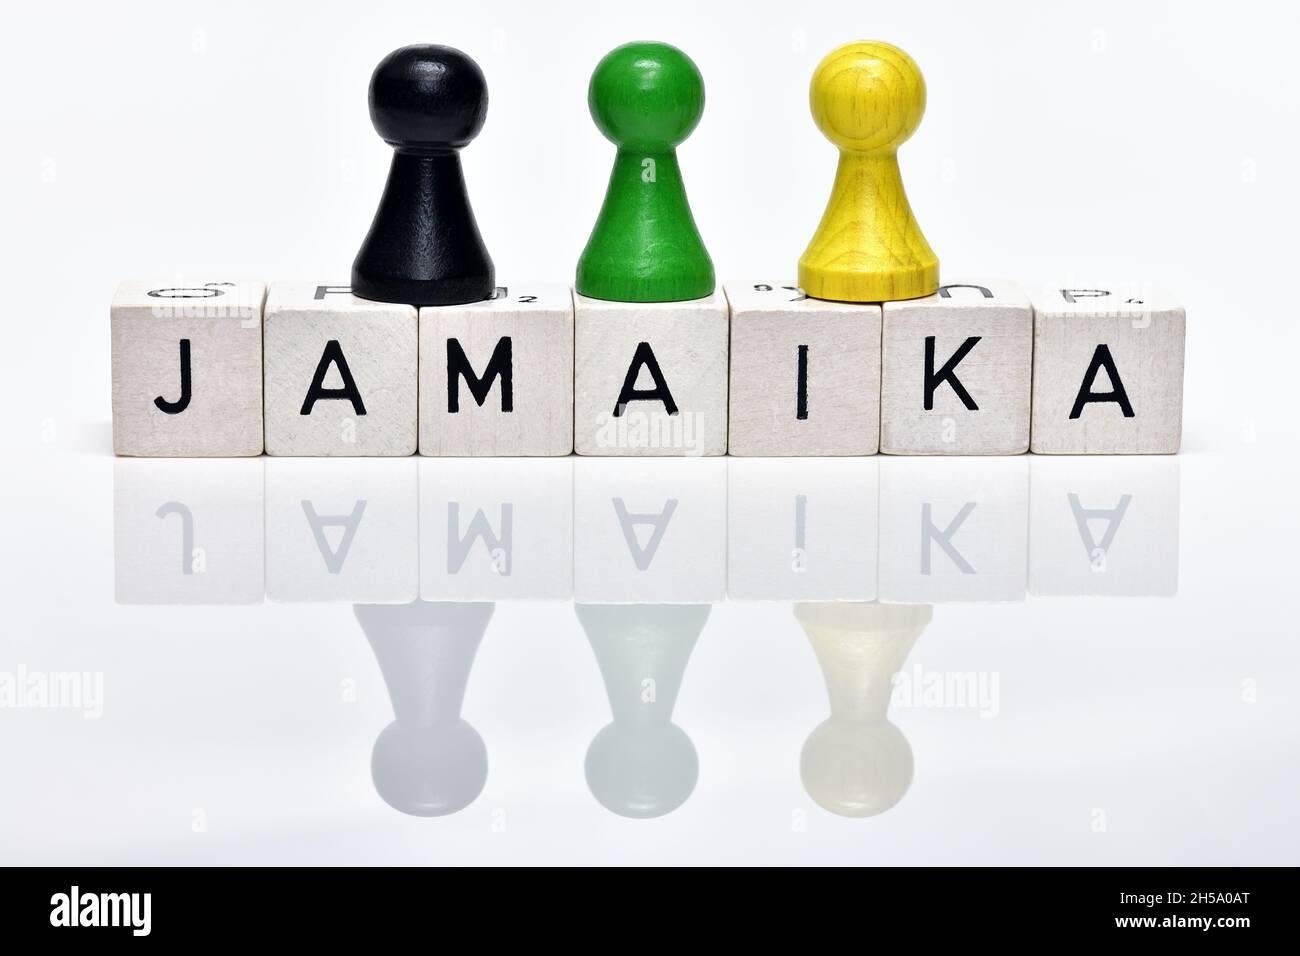 Spielfiguren in Schwarz, Grün und Gelb, Koalition aus CDU/CSU, den Grünen und FDP, Jamaika-Koalition Stock Photo